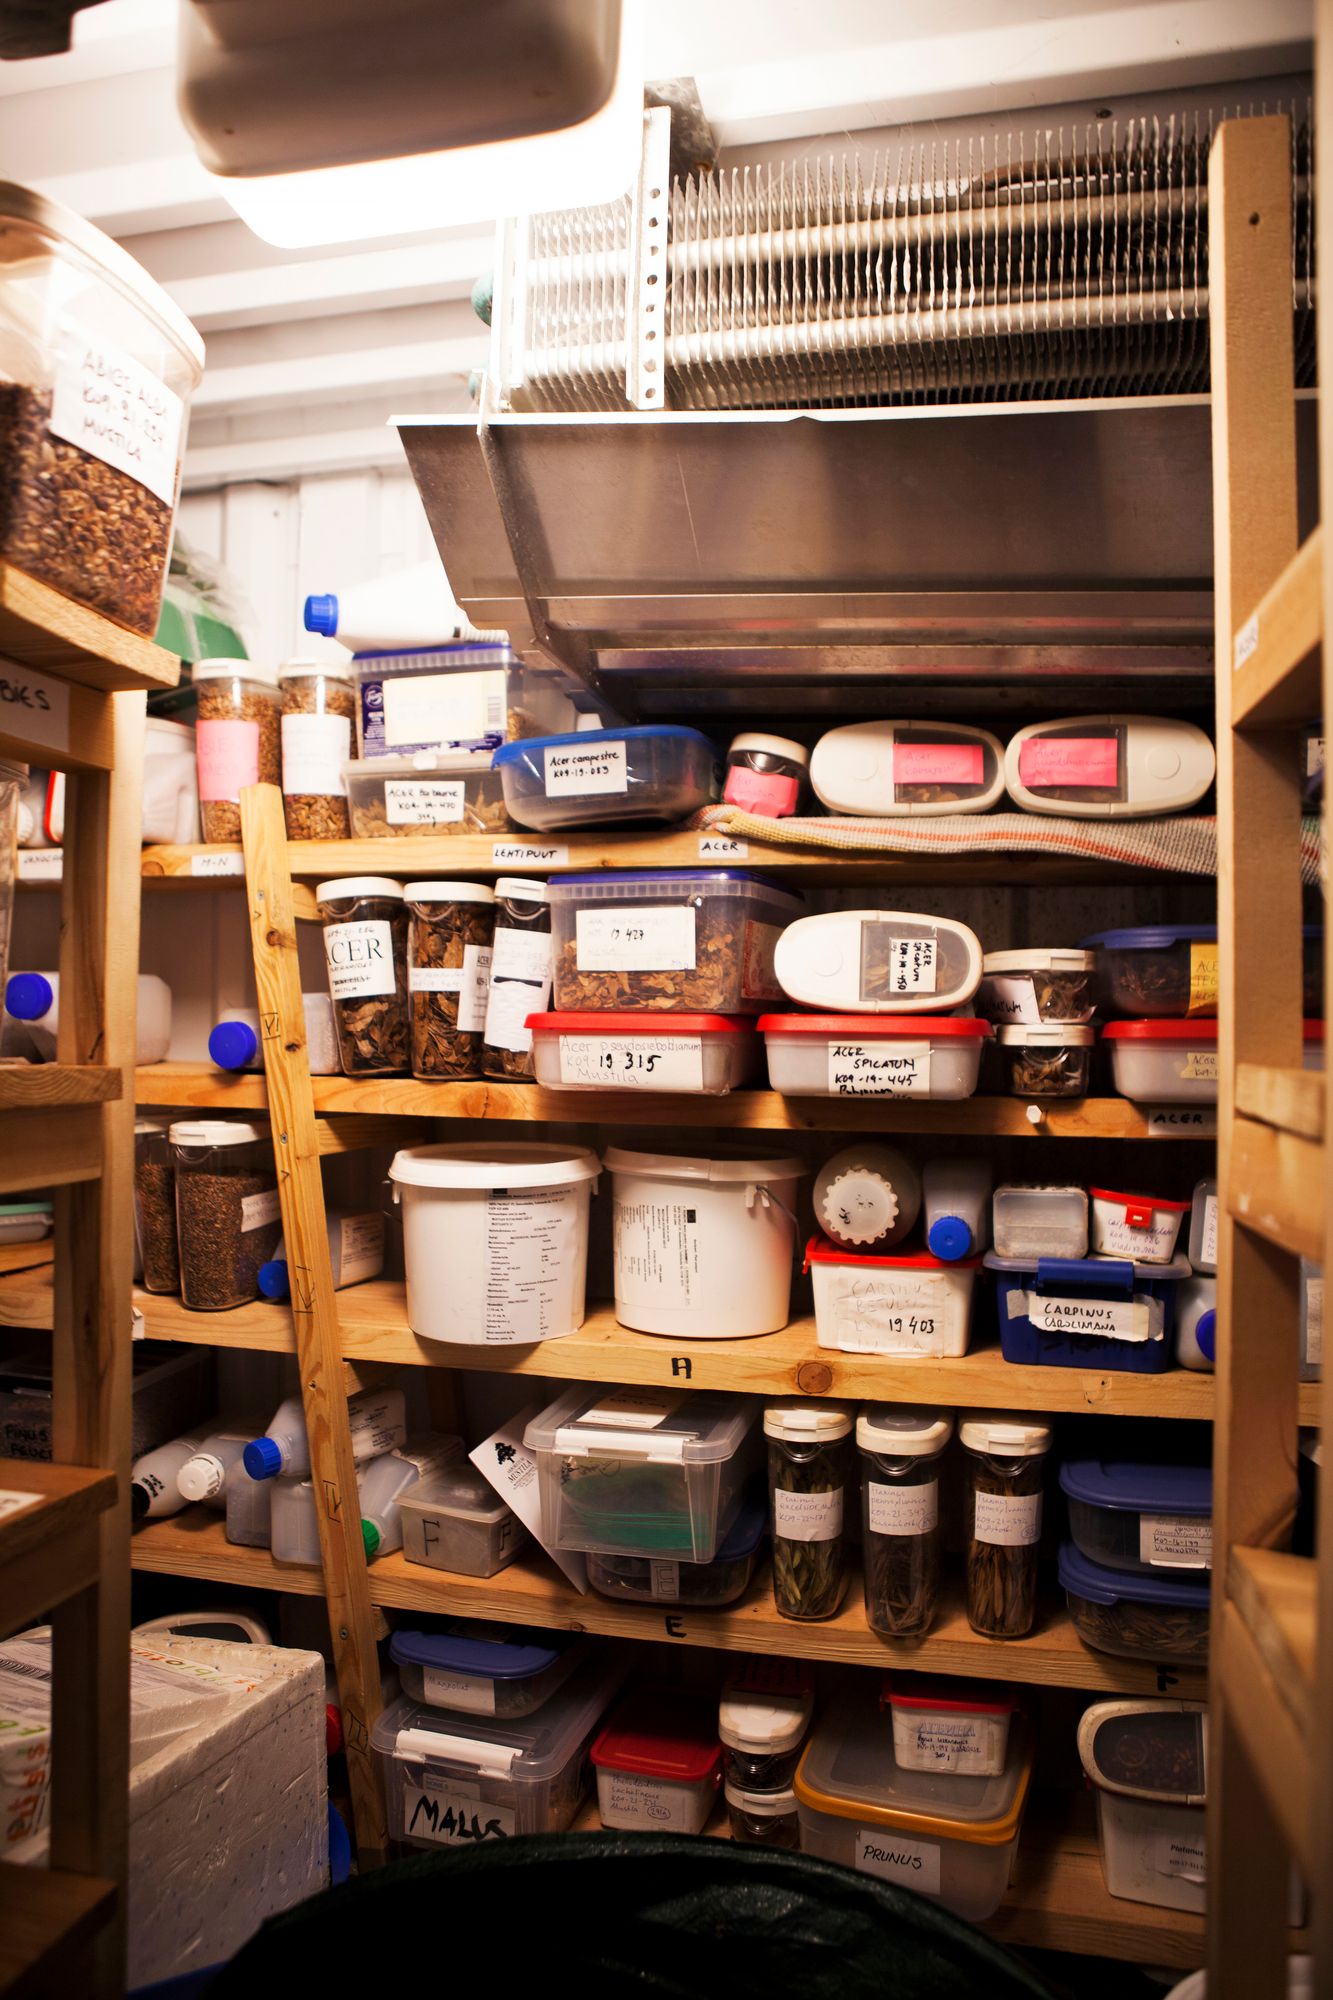 Mustilan myynti­siemeniä säilytetään viileässä varastokaapissa.  © Sini-Marja Niska